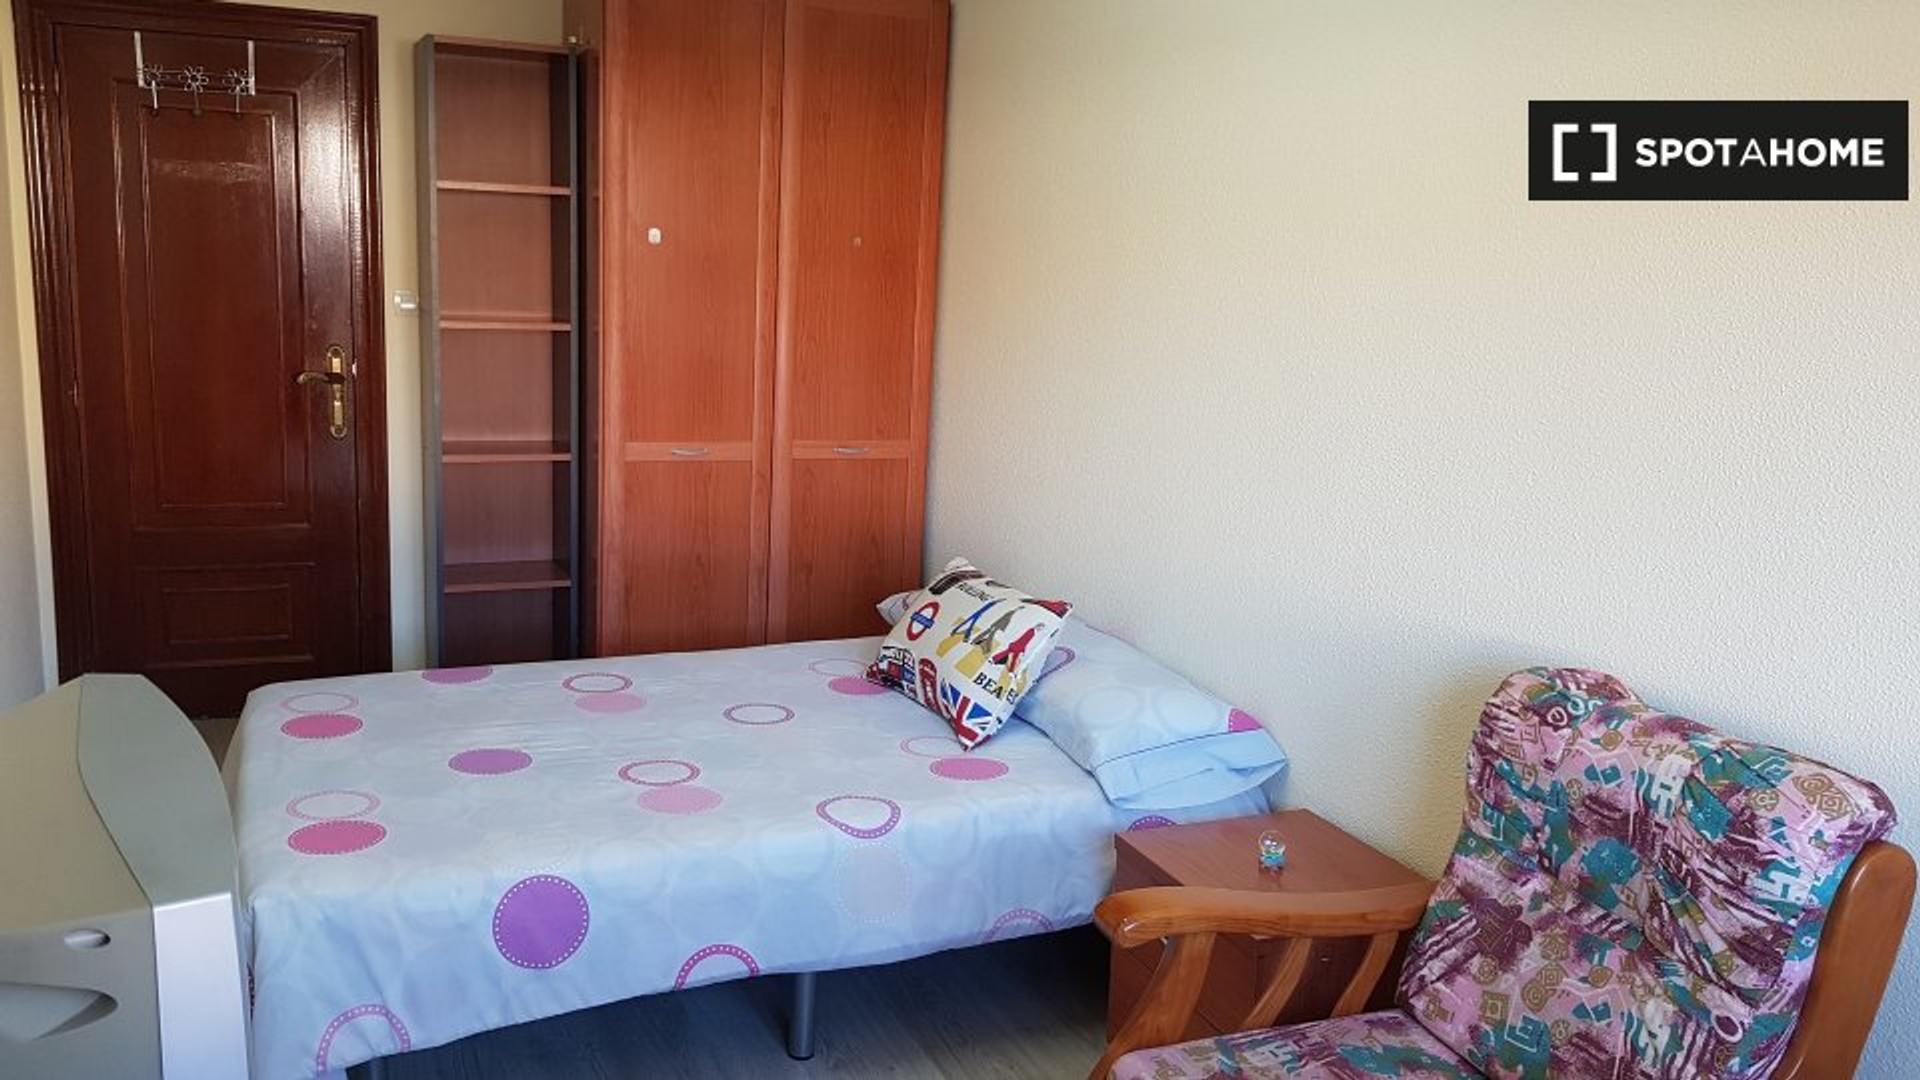 Alquiler de habitación en piso compartido en Salamanca